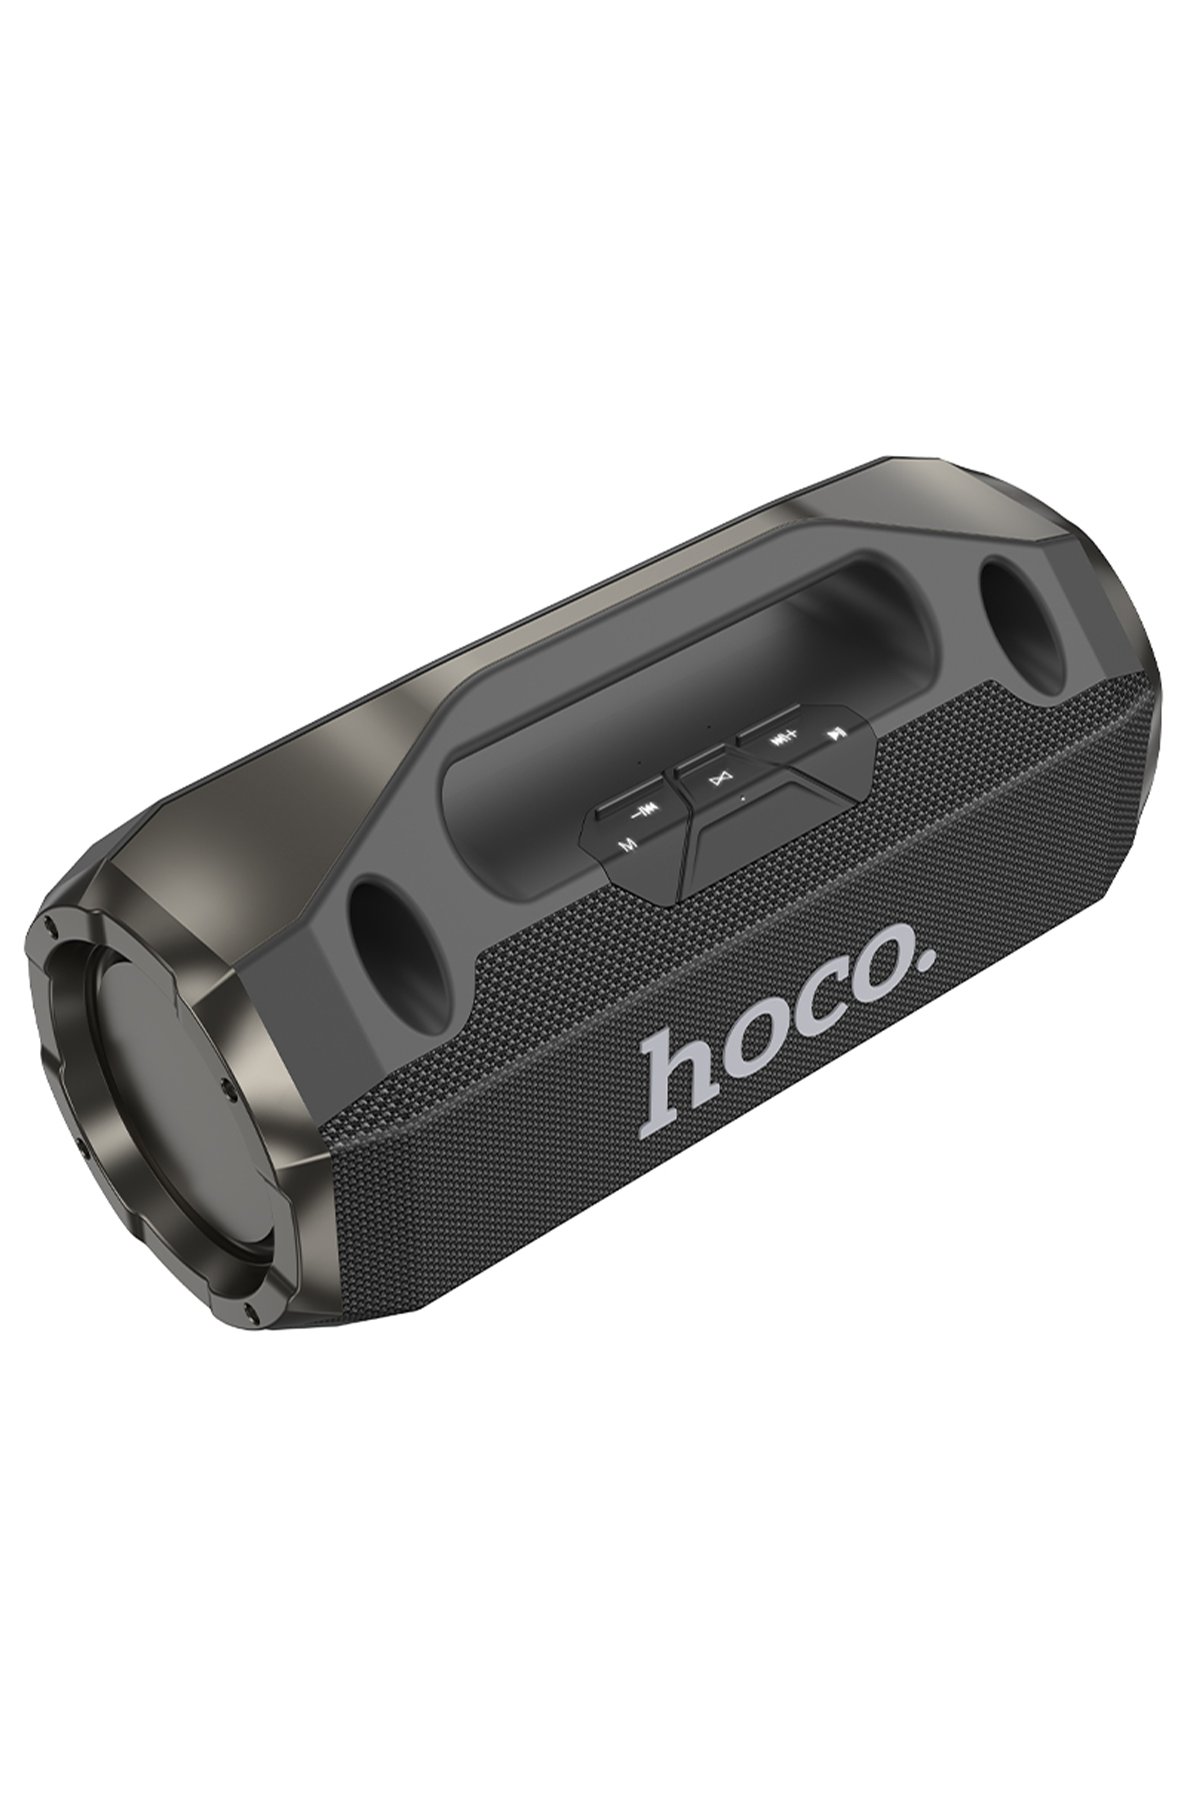 Hoco U122 1.2M Lantern USB to Type-C Şarj Data Kablosu - Siyah